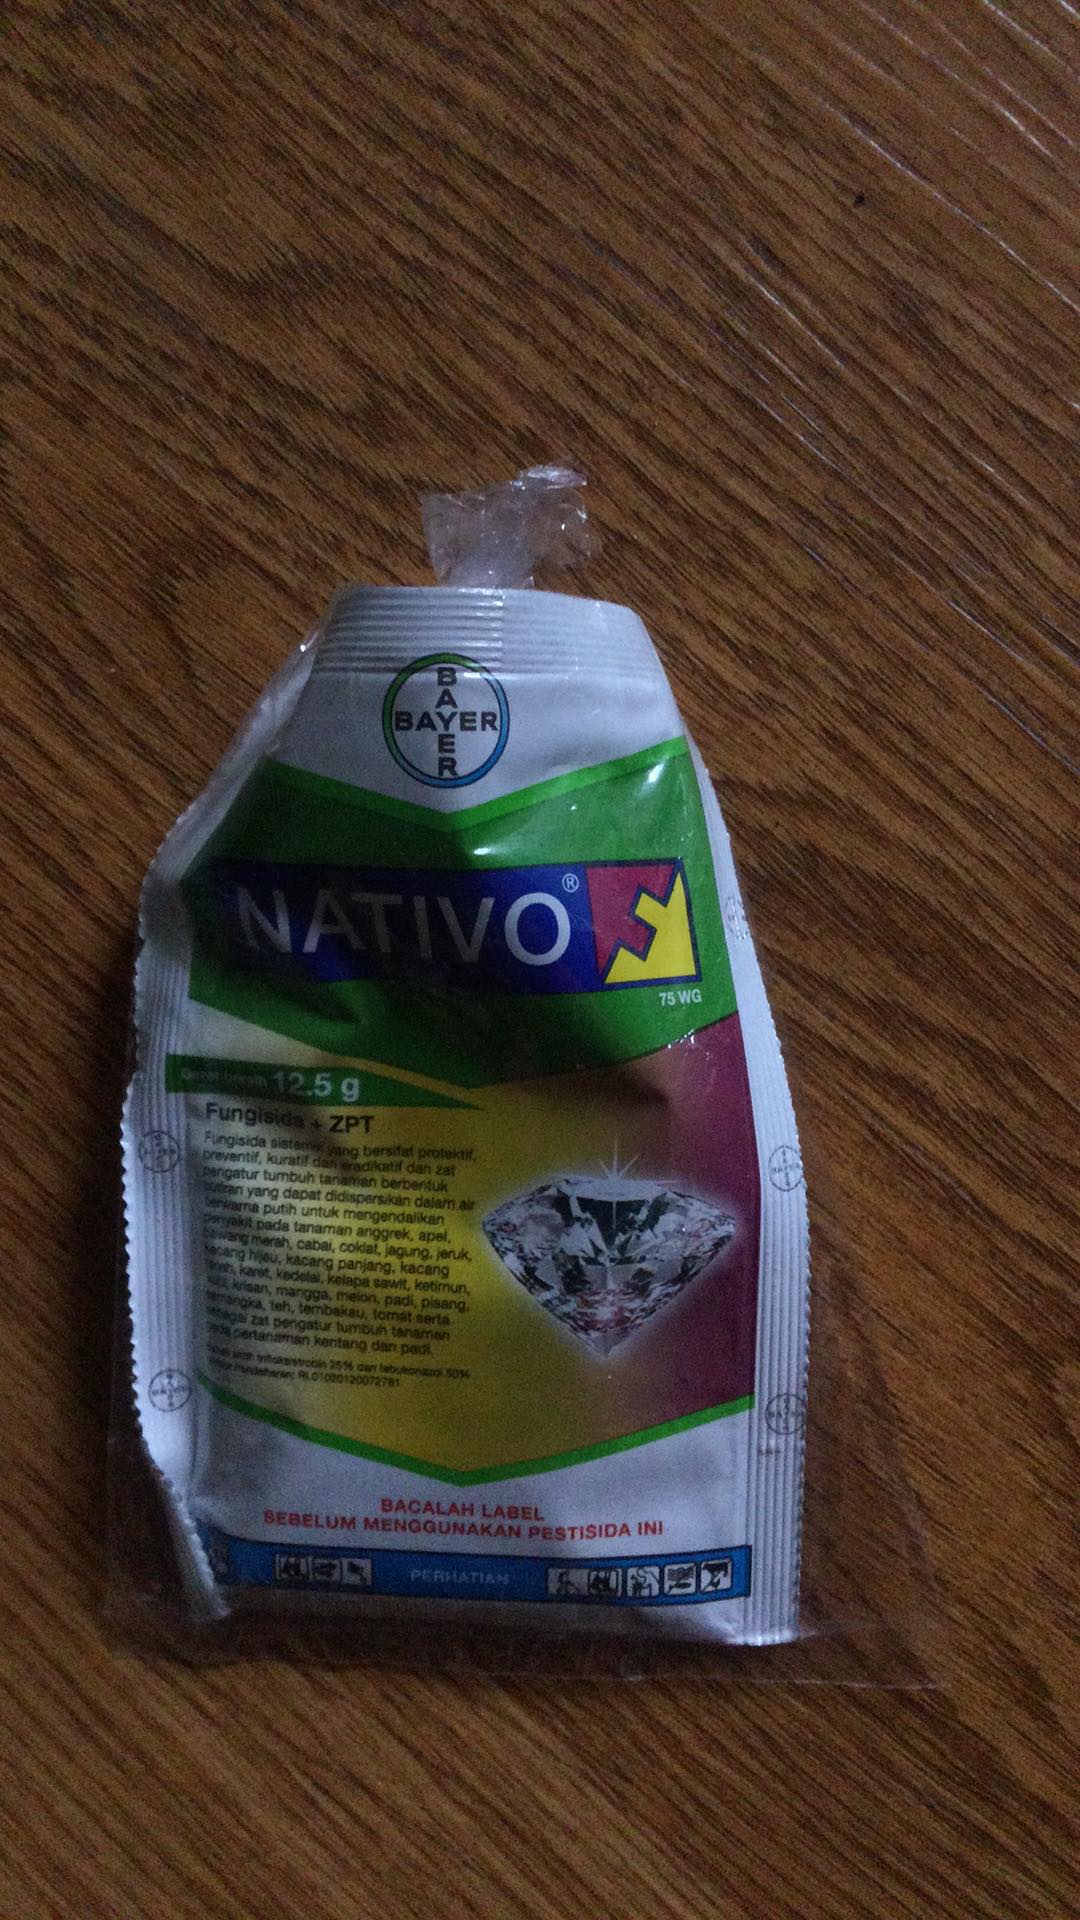 Nativo 75 Wg 12.5 Gram Fungisida